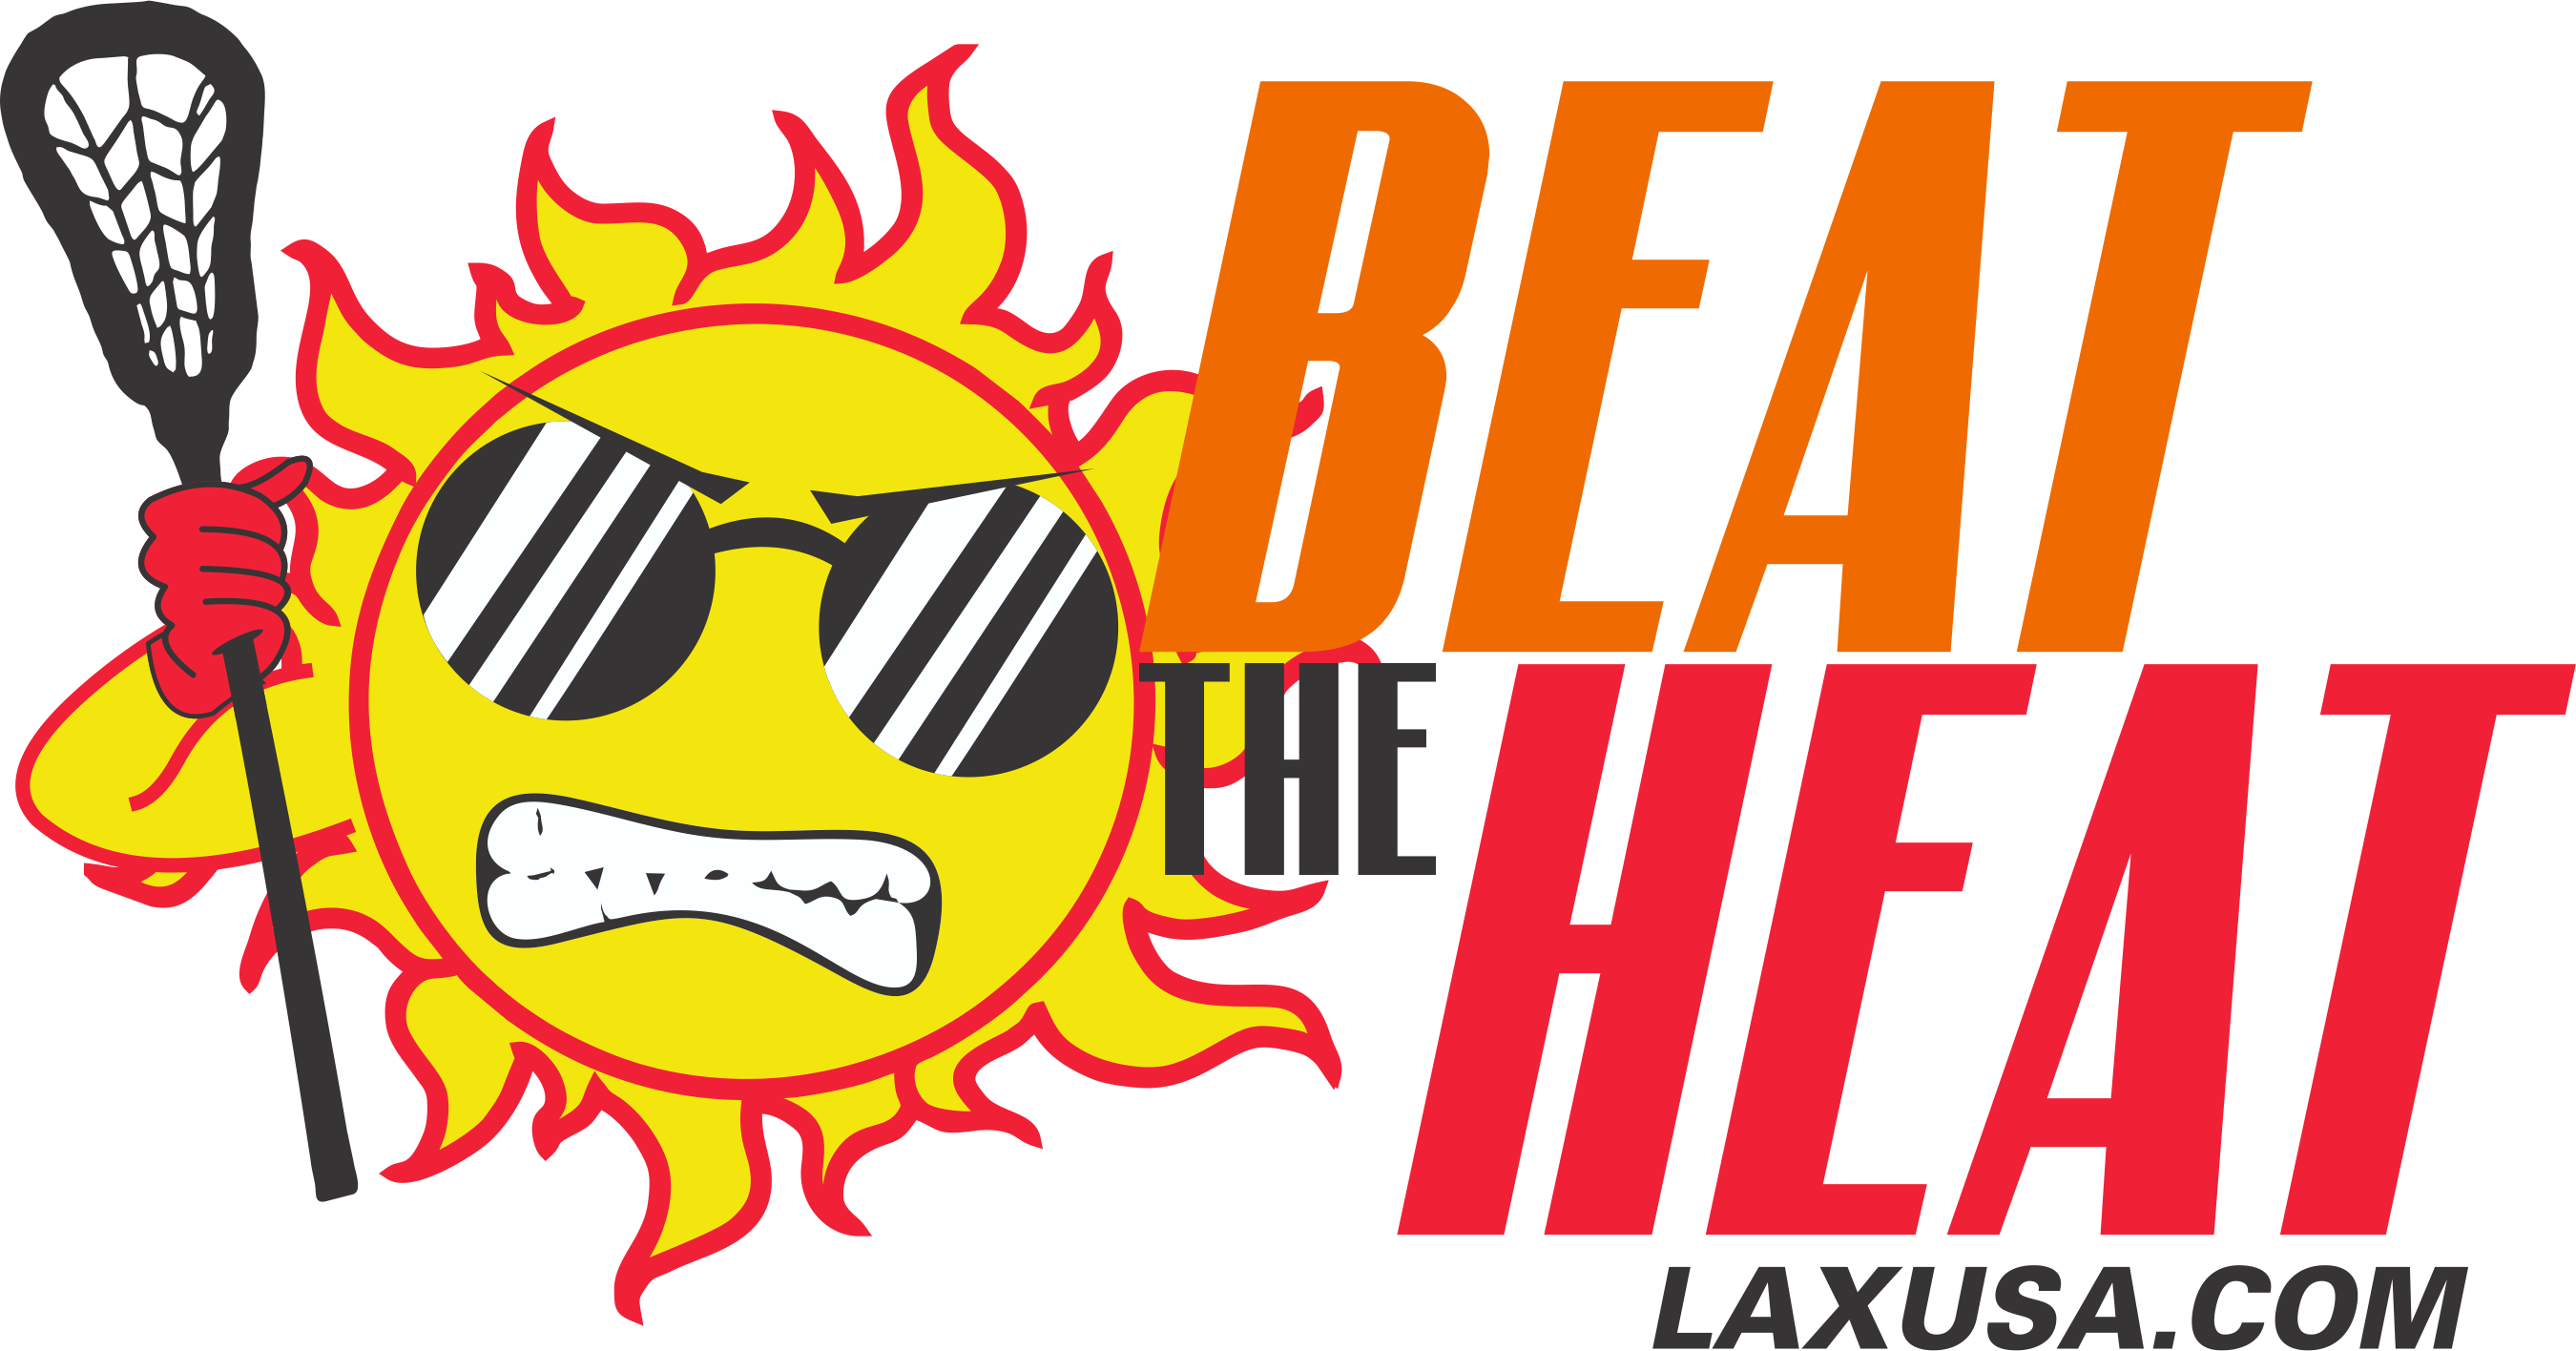 LAX USA Beat the Heat